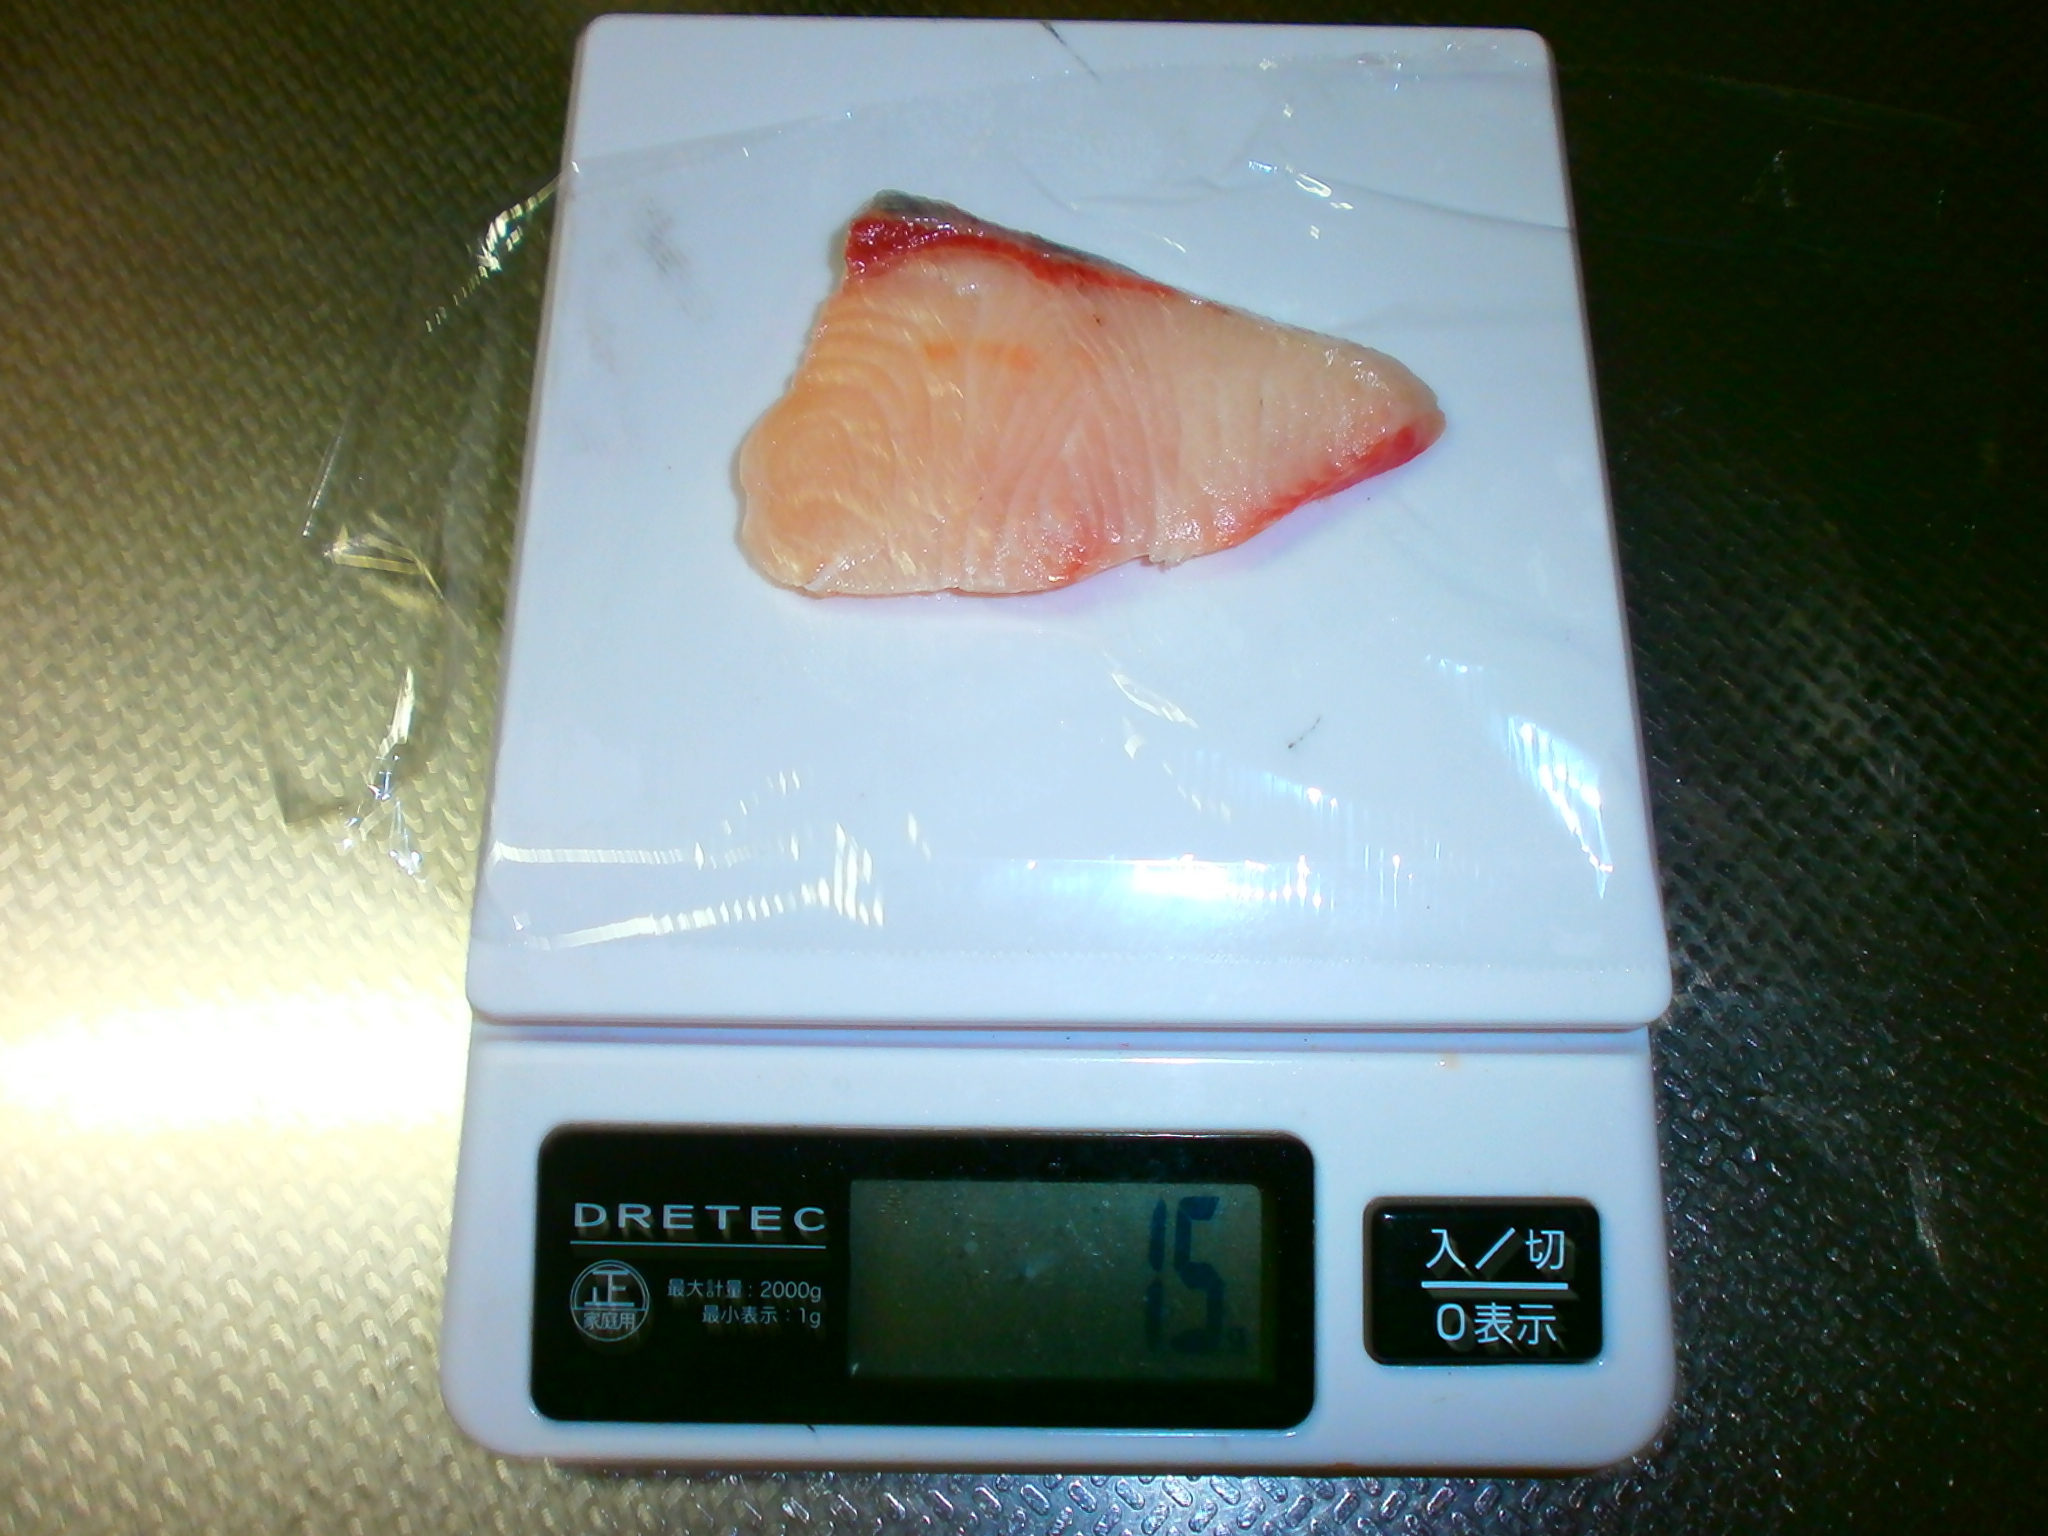 Yellowtail sashimi